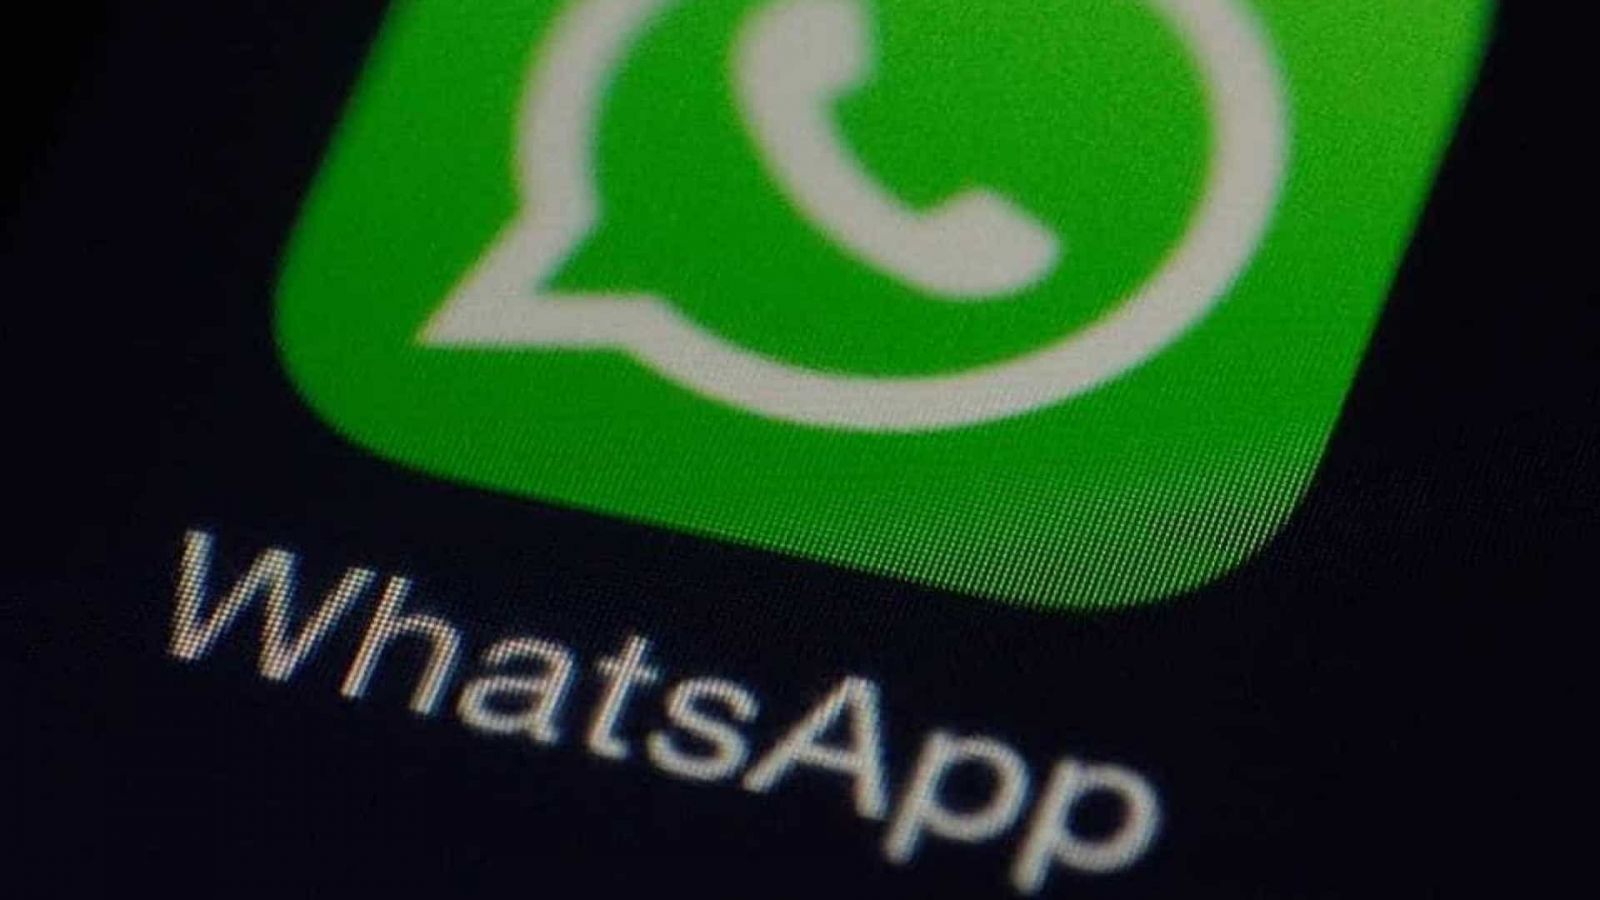 Nova opção do WhatsApp vai ajudar a detectar notícias falsas - News Rondônia